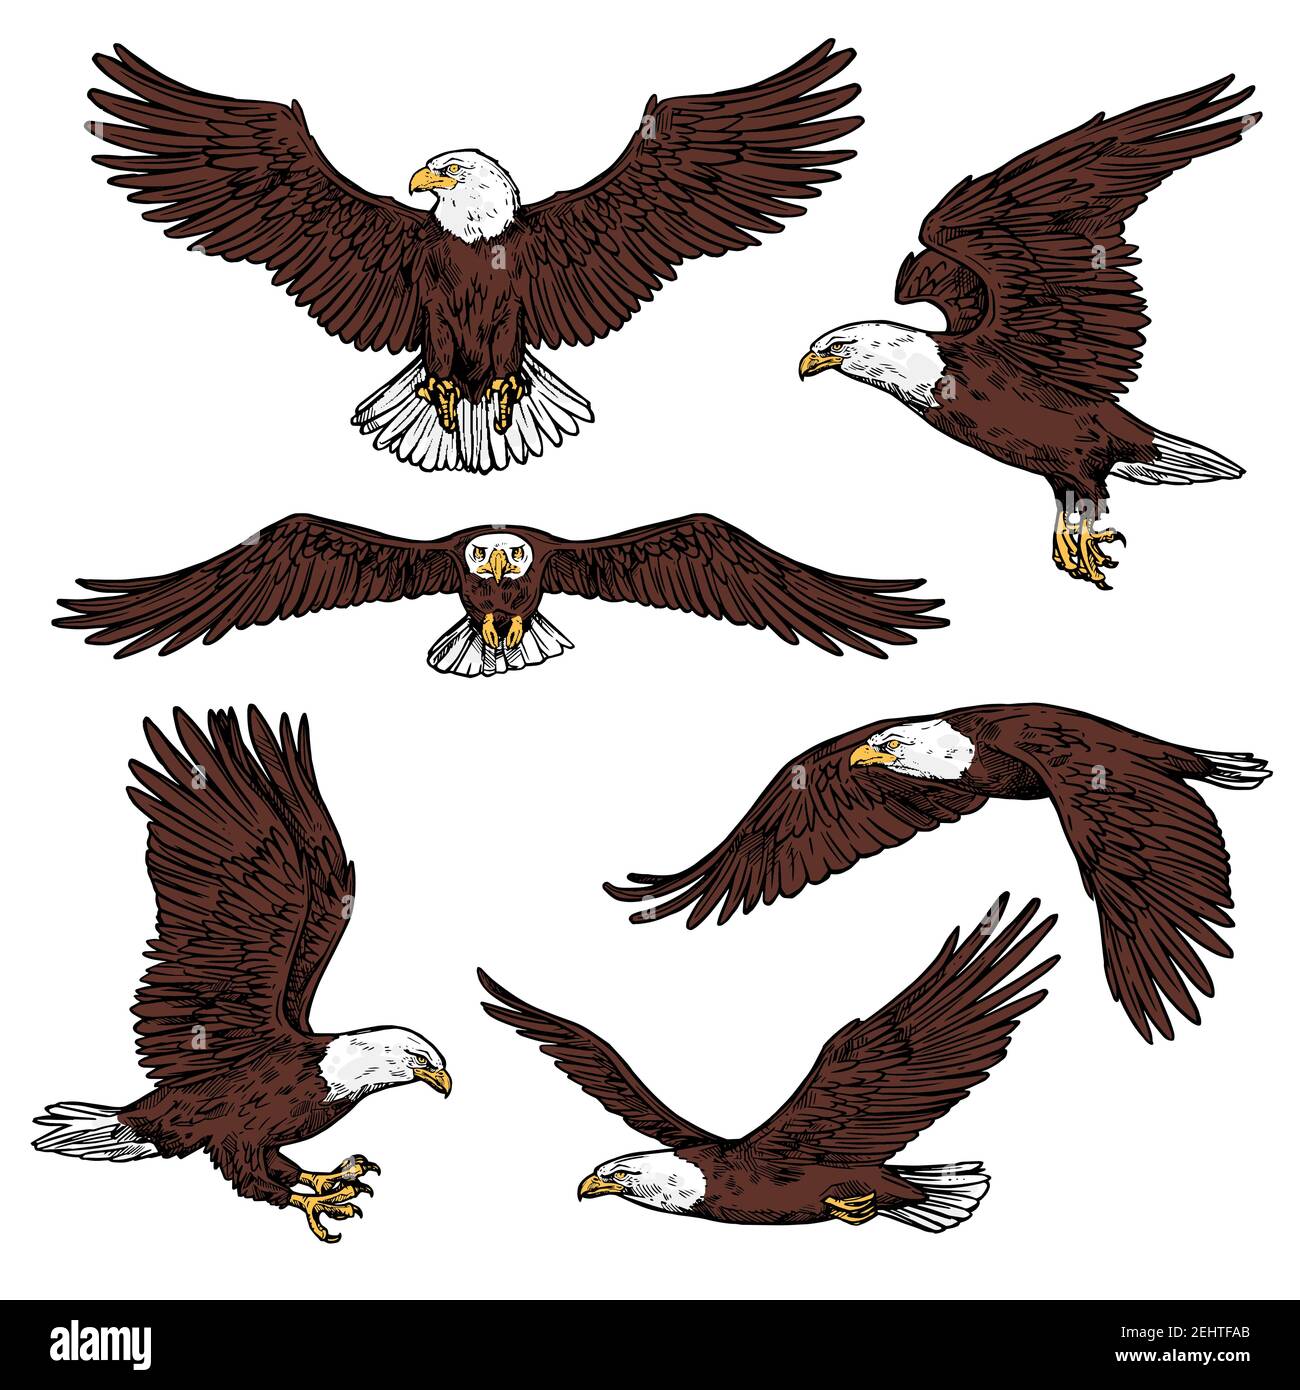 Iconos de águila calva volando con las alas extendidas vista frontal y  lateral. Aves vectoriales de presa o aves rapaces, buitre de águila  raptora, halcón o halcón para ornit Imagen Vector de